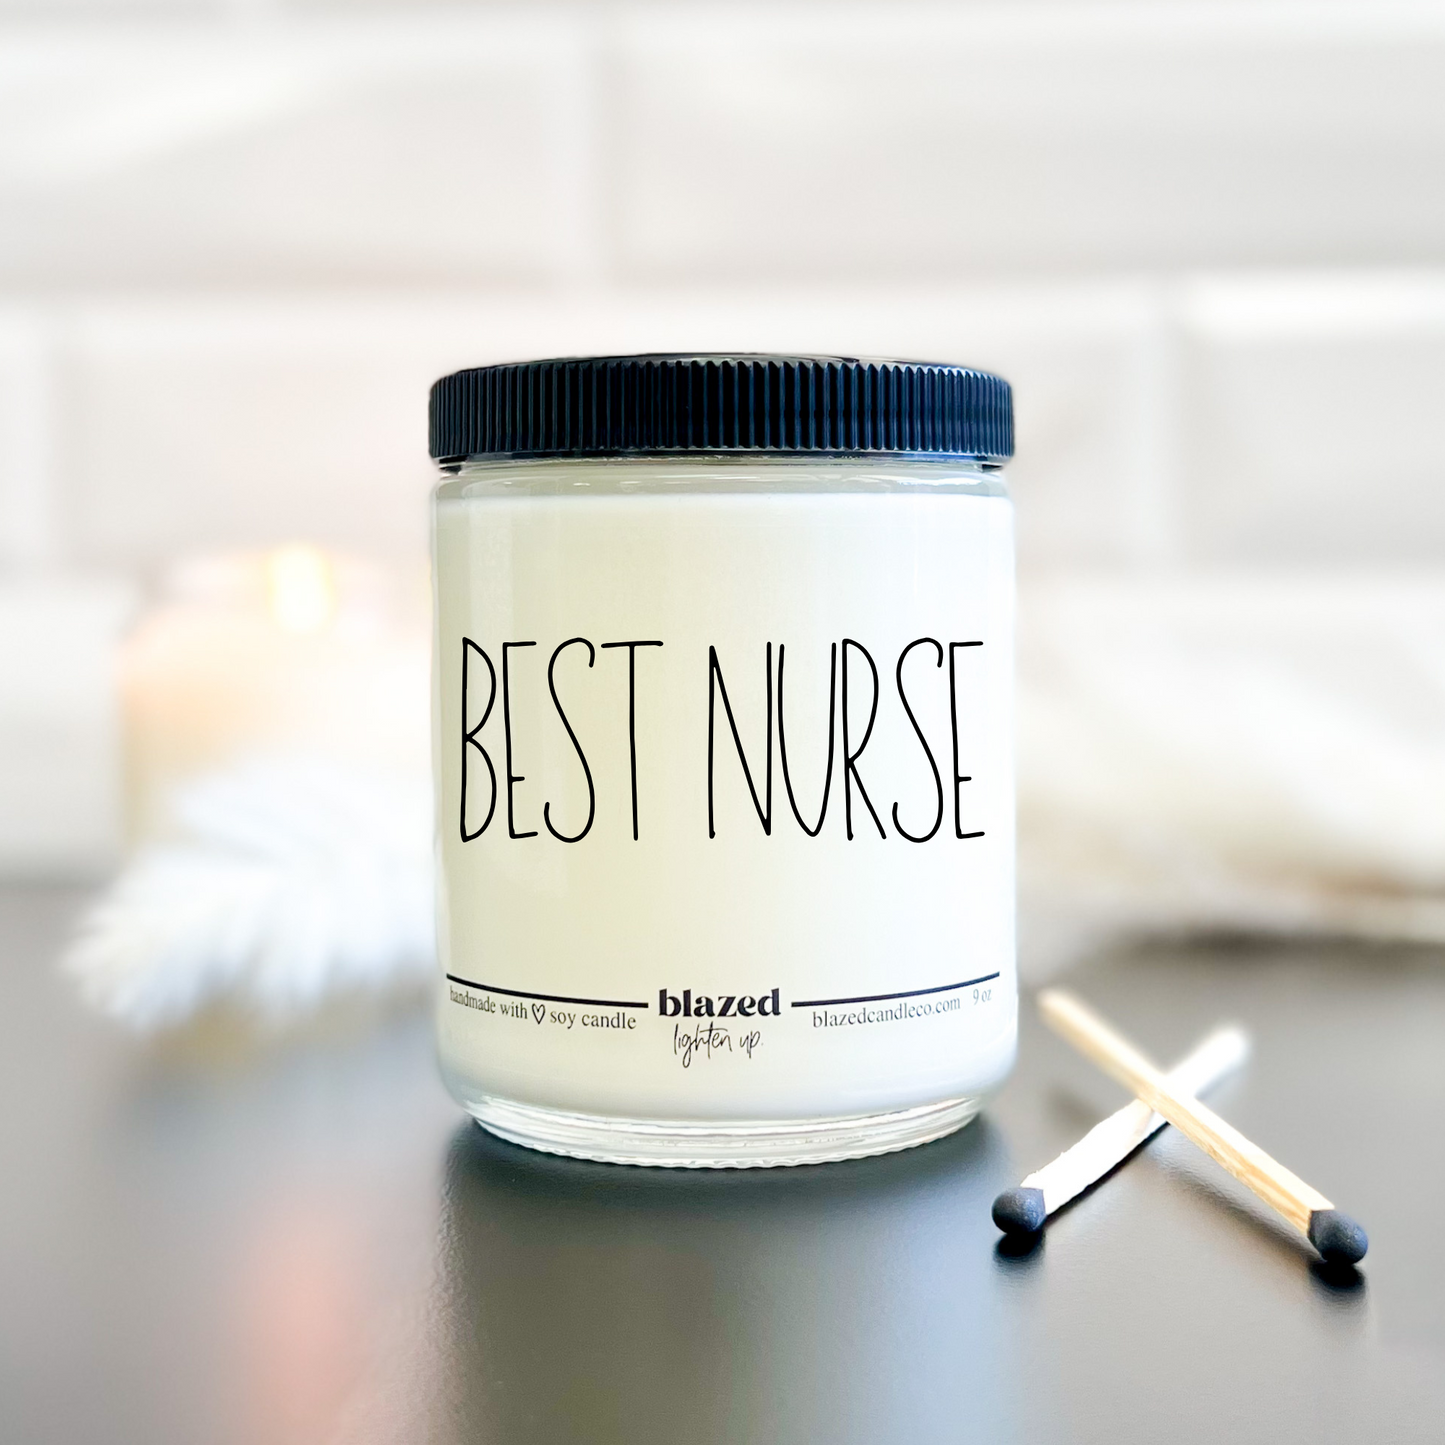 Best Nurse - Candle